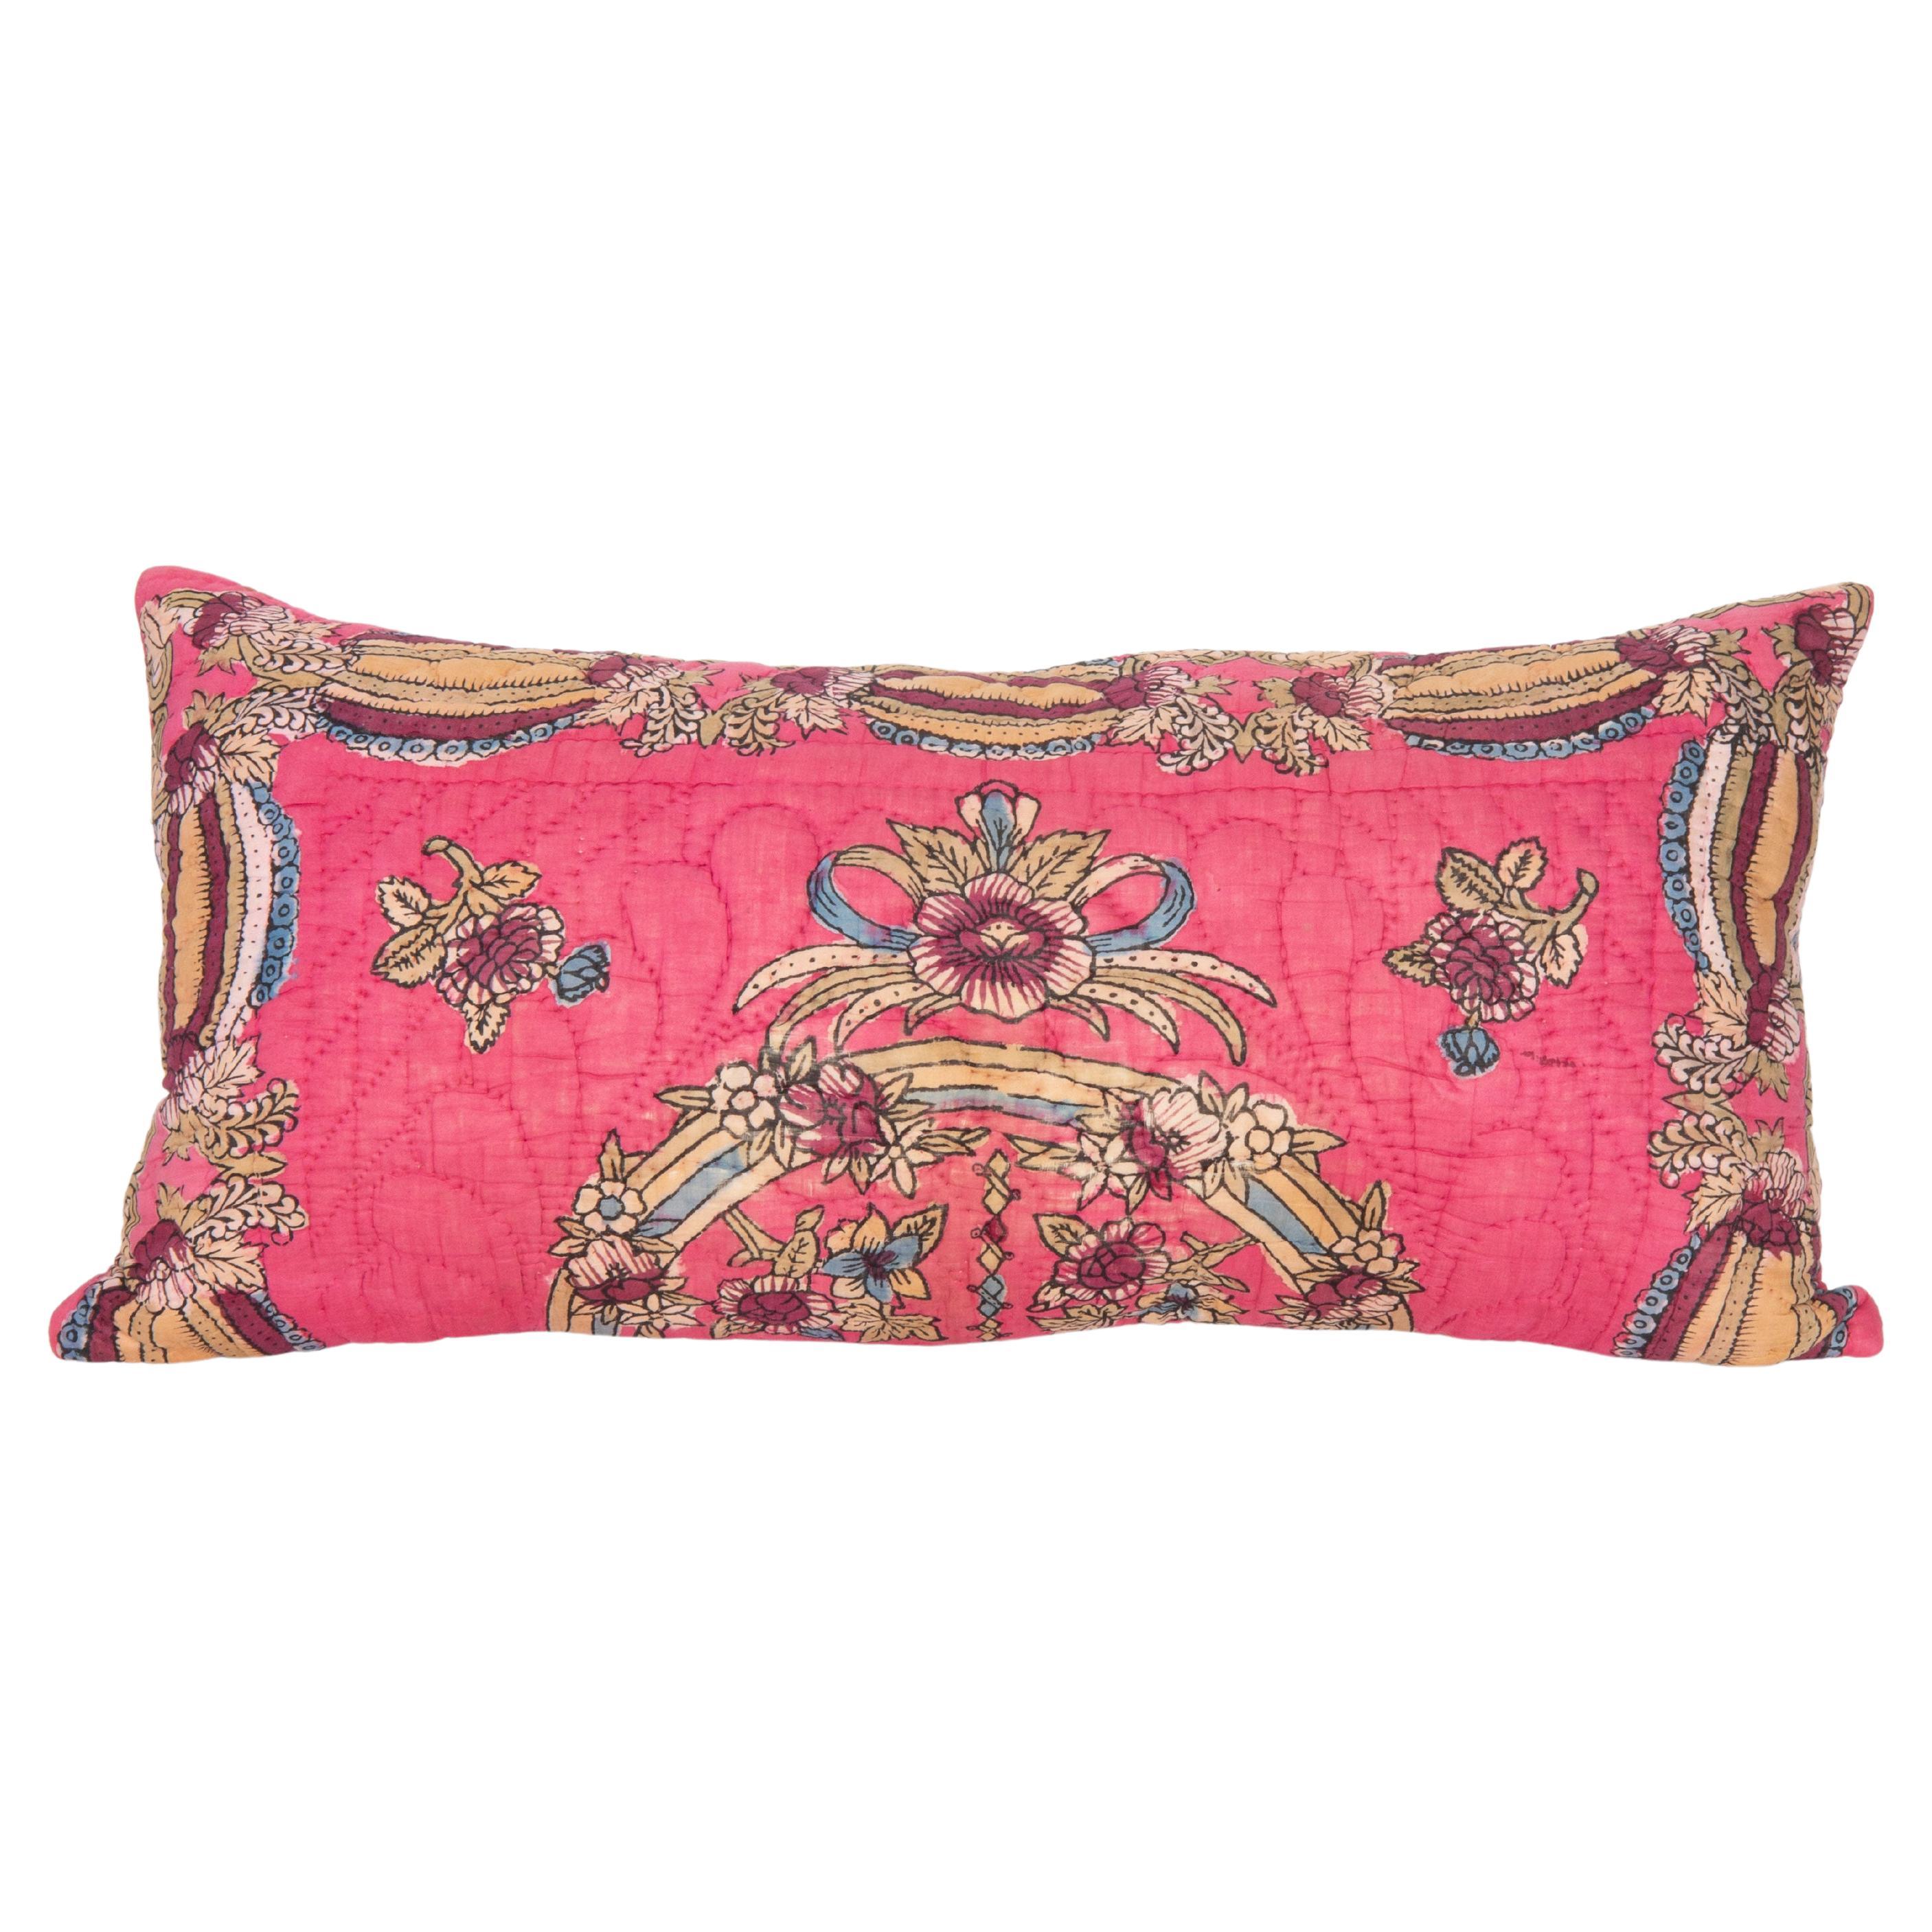 Taie d'oreiller réalisée à partir d'un quilt anatolien du milieu du 20e siècle